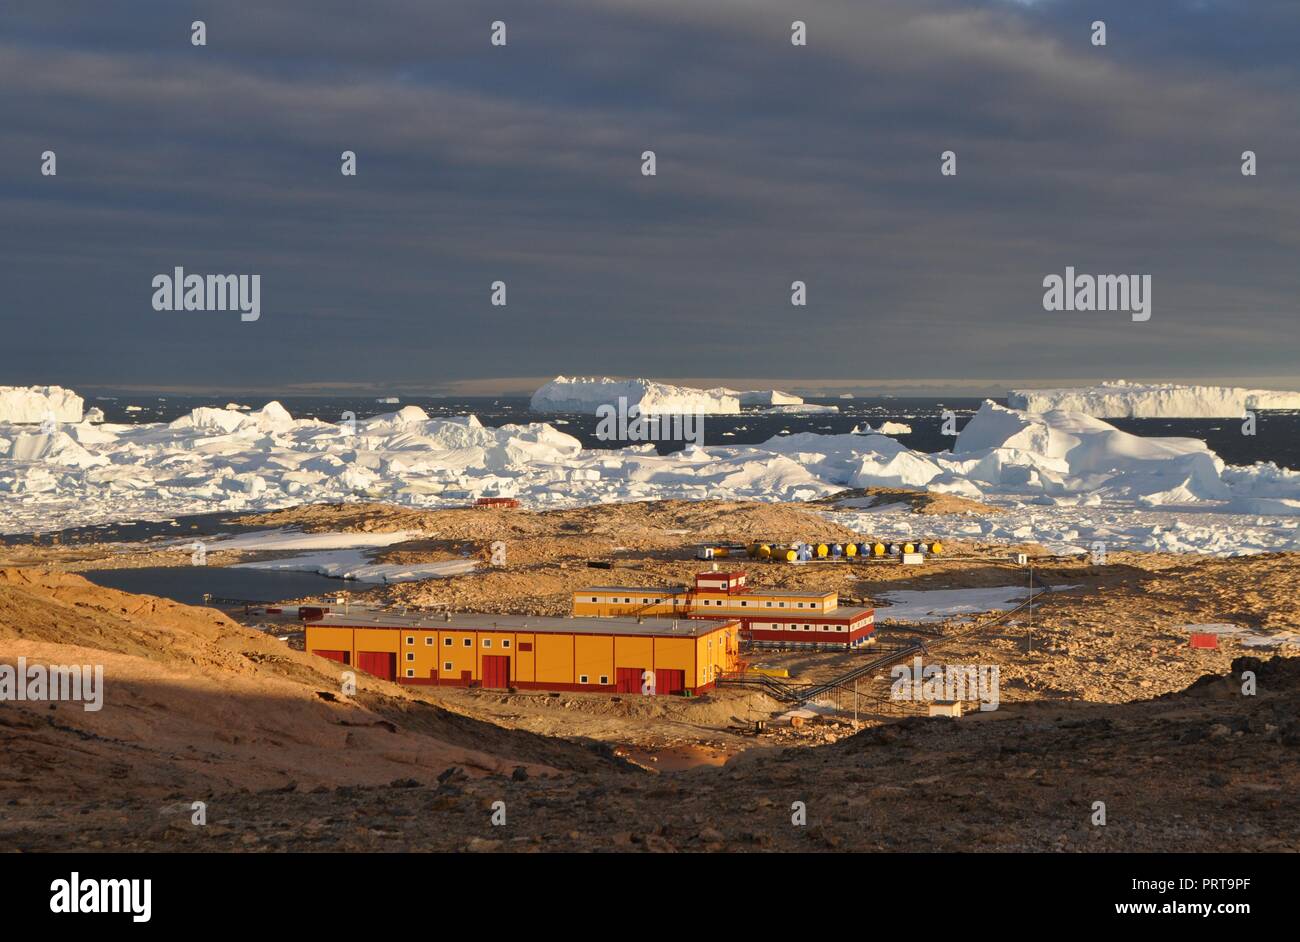 Panorama et juste de l'air. Sur la banquise, le relief et les paysages de l'Antarctique. Lever du soleil, le jour, le coucher du soleil. Banque D'Images